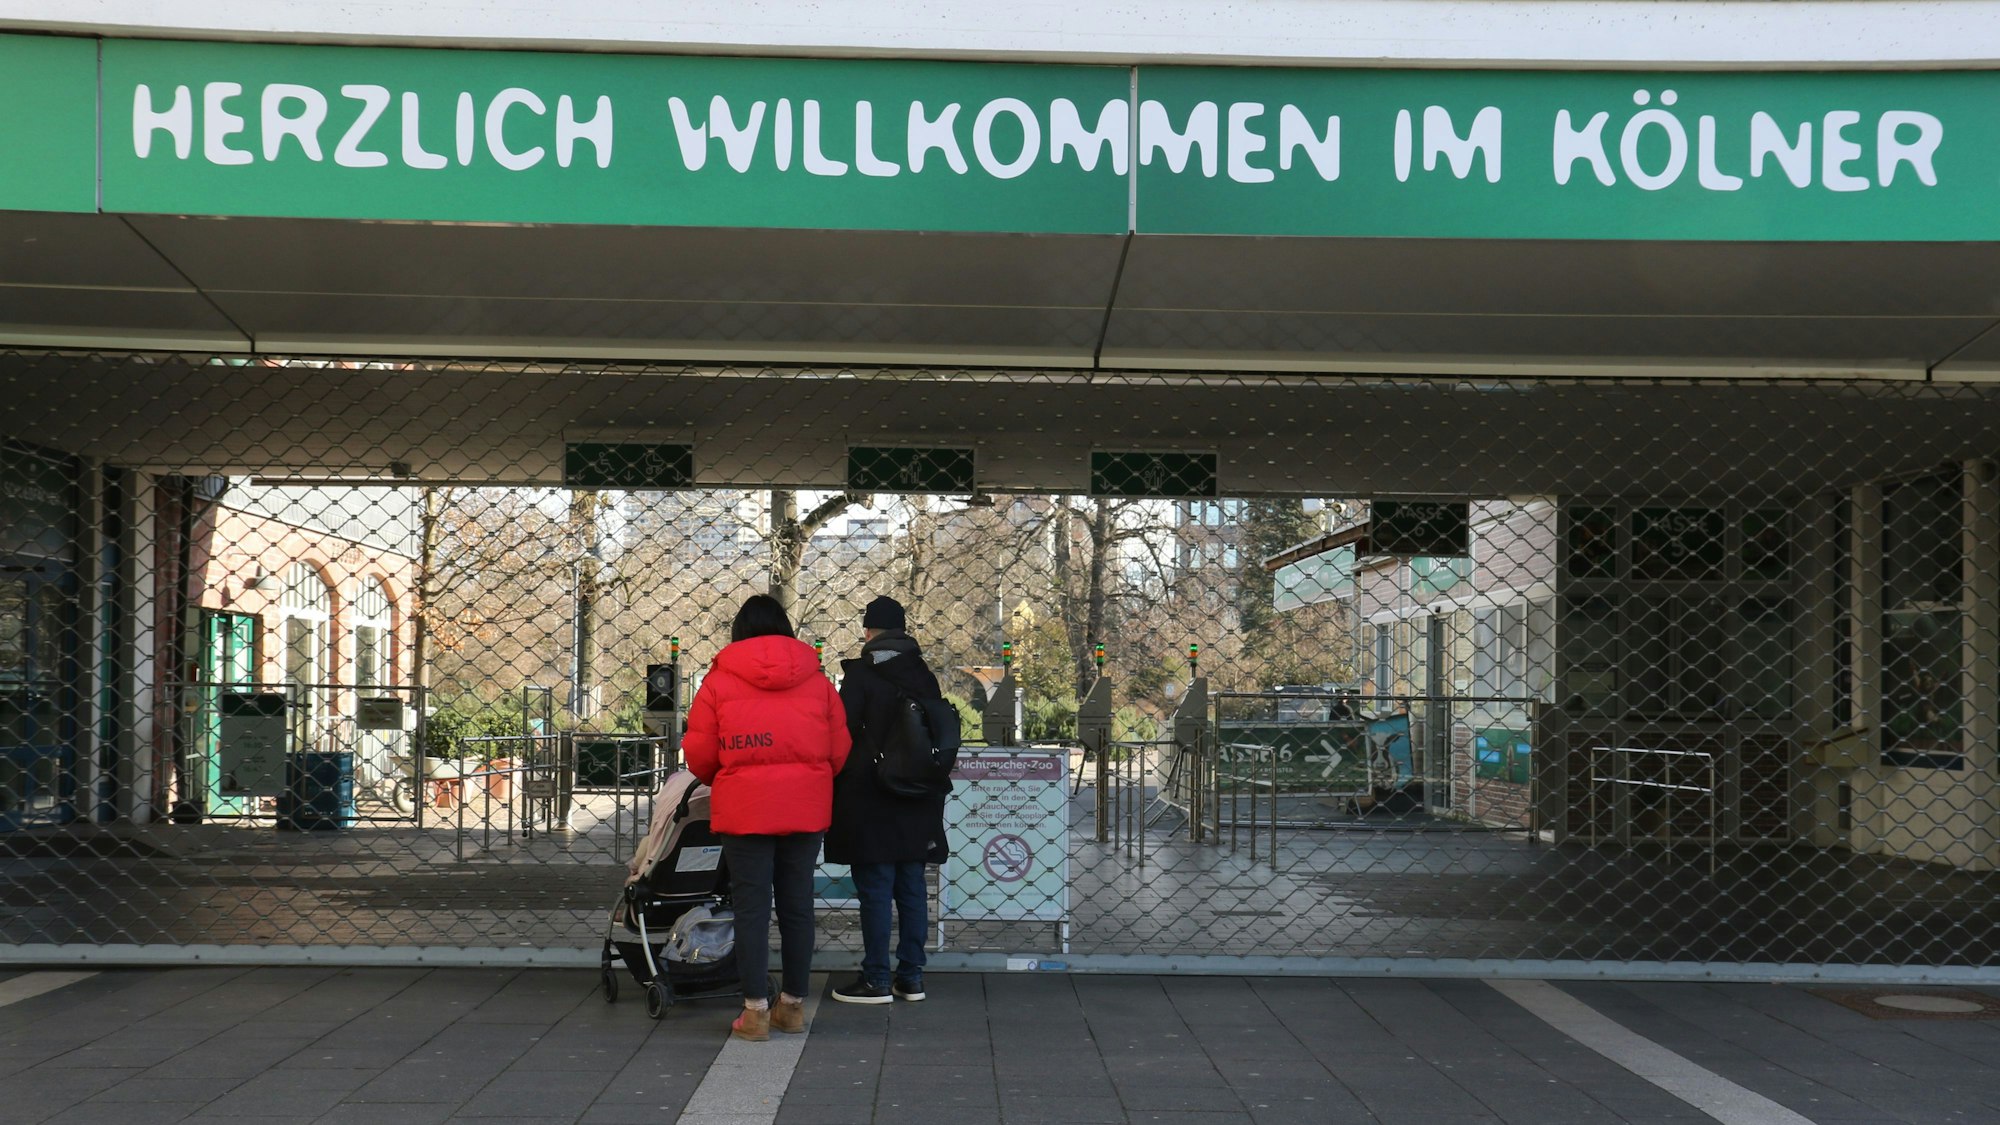 Zwei Menschen stehen vor dem geschlossen Haupteingang des Zoos.